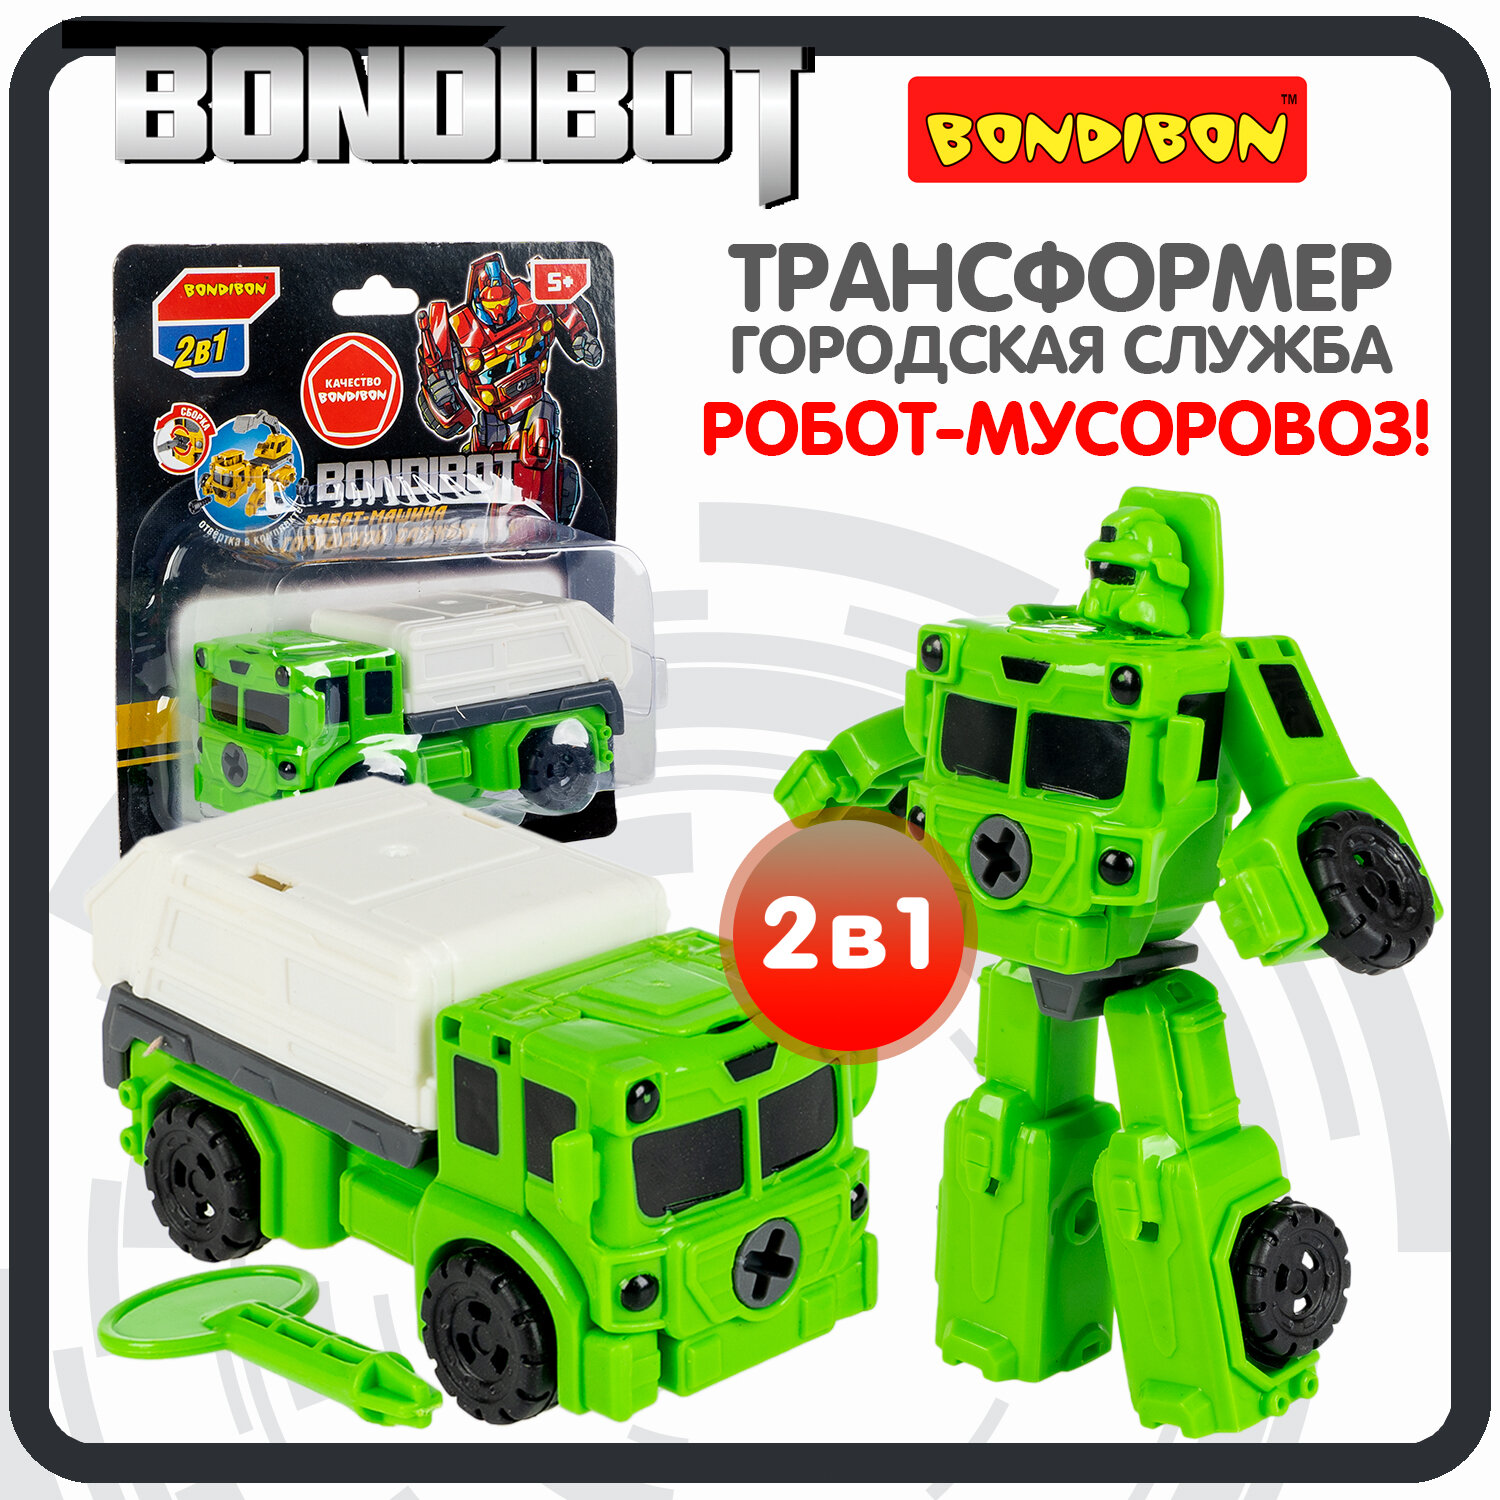 Трансформер робот-машина городской службы, 2в1 BONDIBOT Bondibon, мусоровоз, цвет зелёный, CRD13,5х1